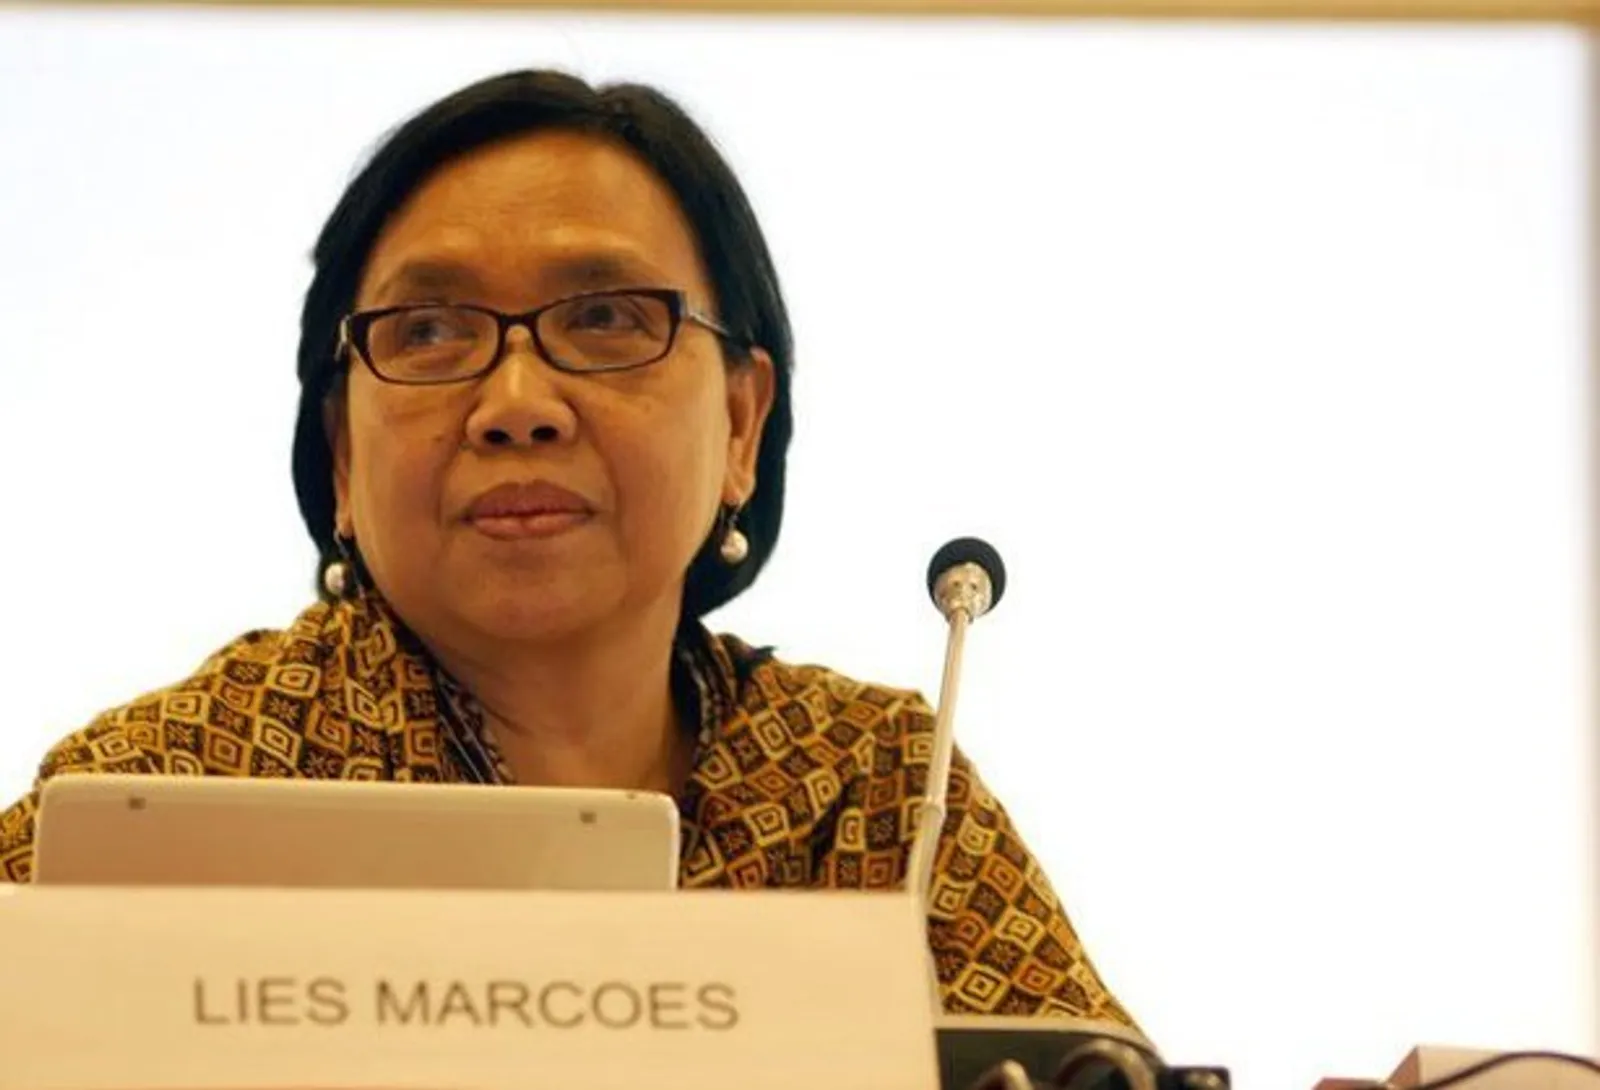 Lies Marcoes: "Jika Suara Perempuan Didengar Maka Hidup Akan Lebih Baik" #BanggaJadiPerempuan